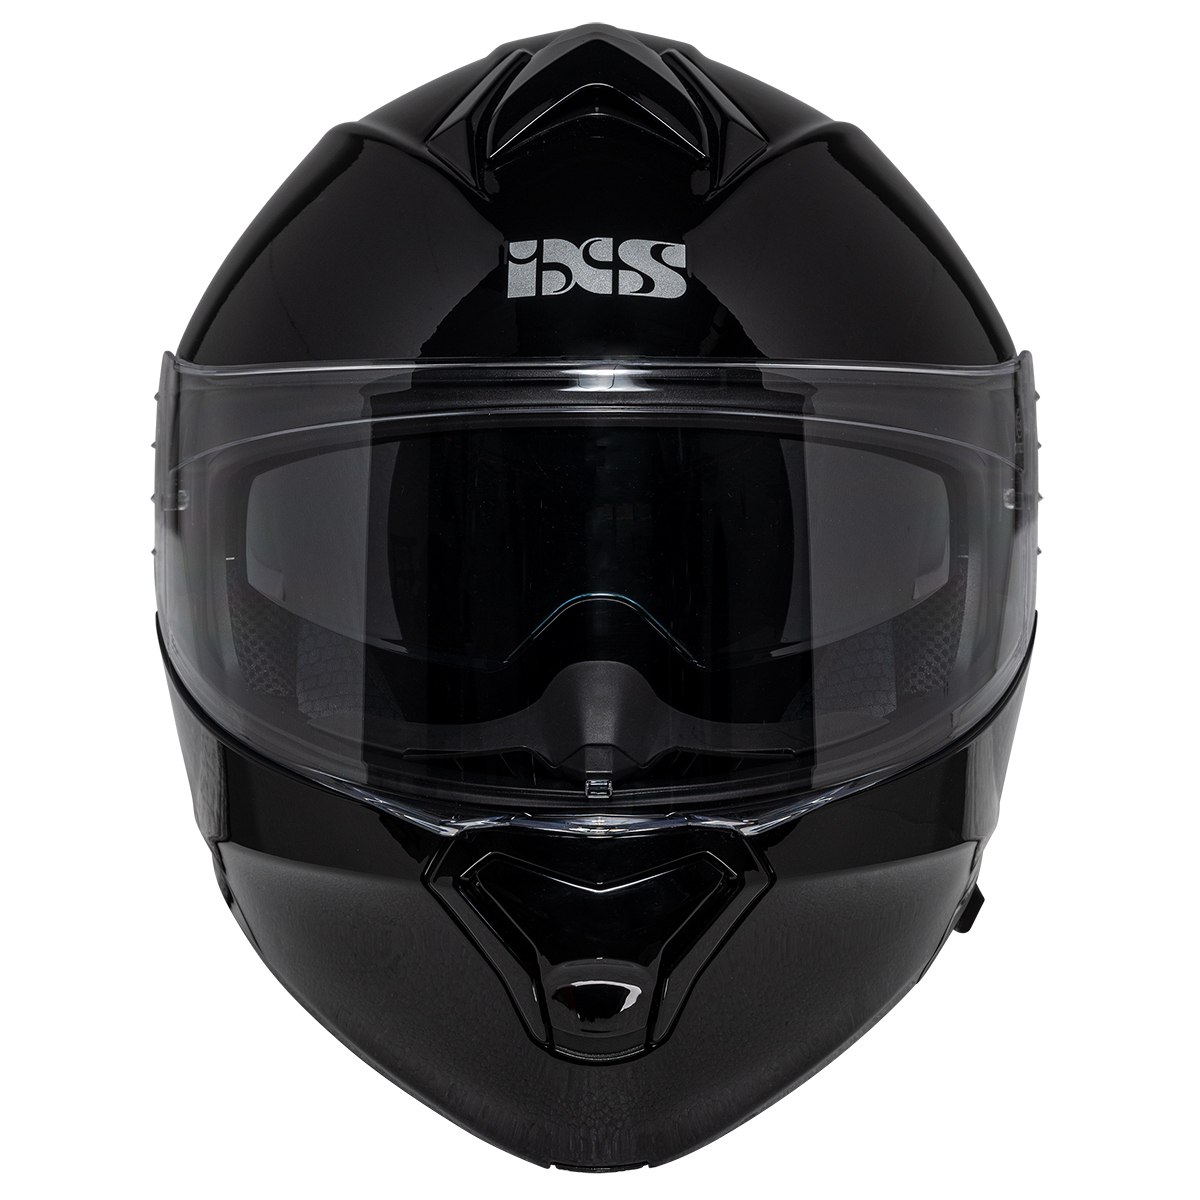 iXS Helm iXS301 1.0, schwarz